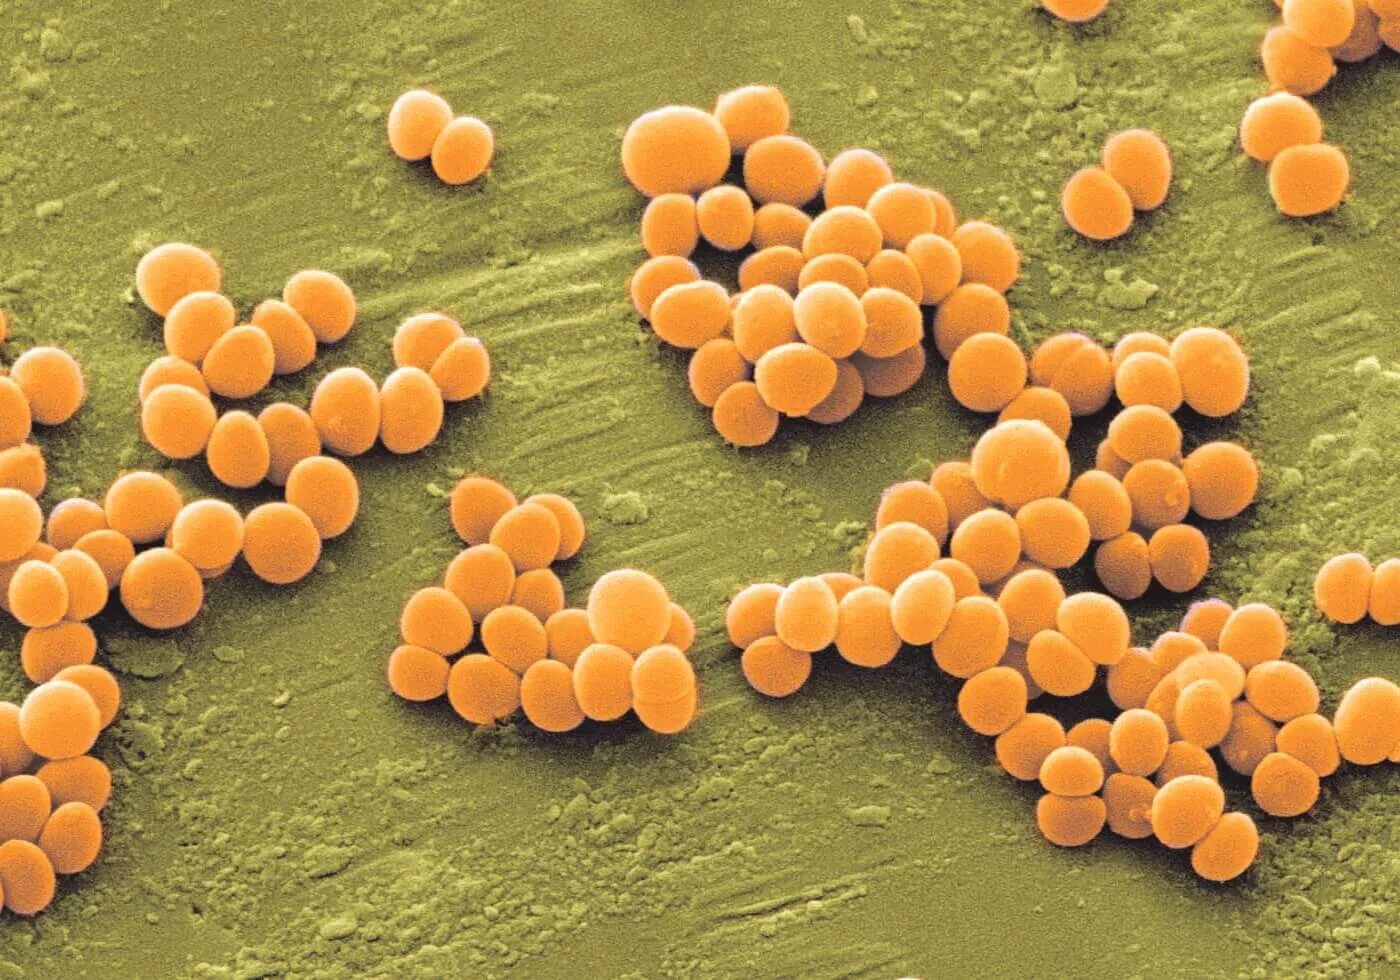 Staphylococcus aureus золотистый стафилококк. S. aureus золотистый стафилококк. Стафилококк золотистый Staphylococcus aureus. Метициллин-устойчивый золотистый стафилококк. Стафилококки сапрофиты.